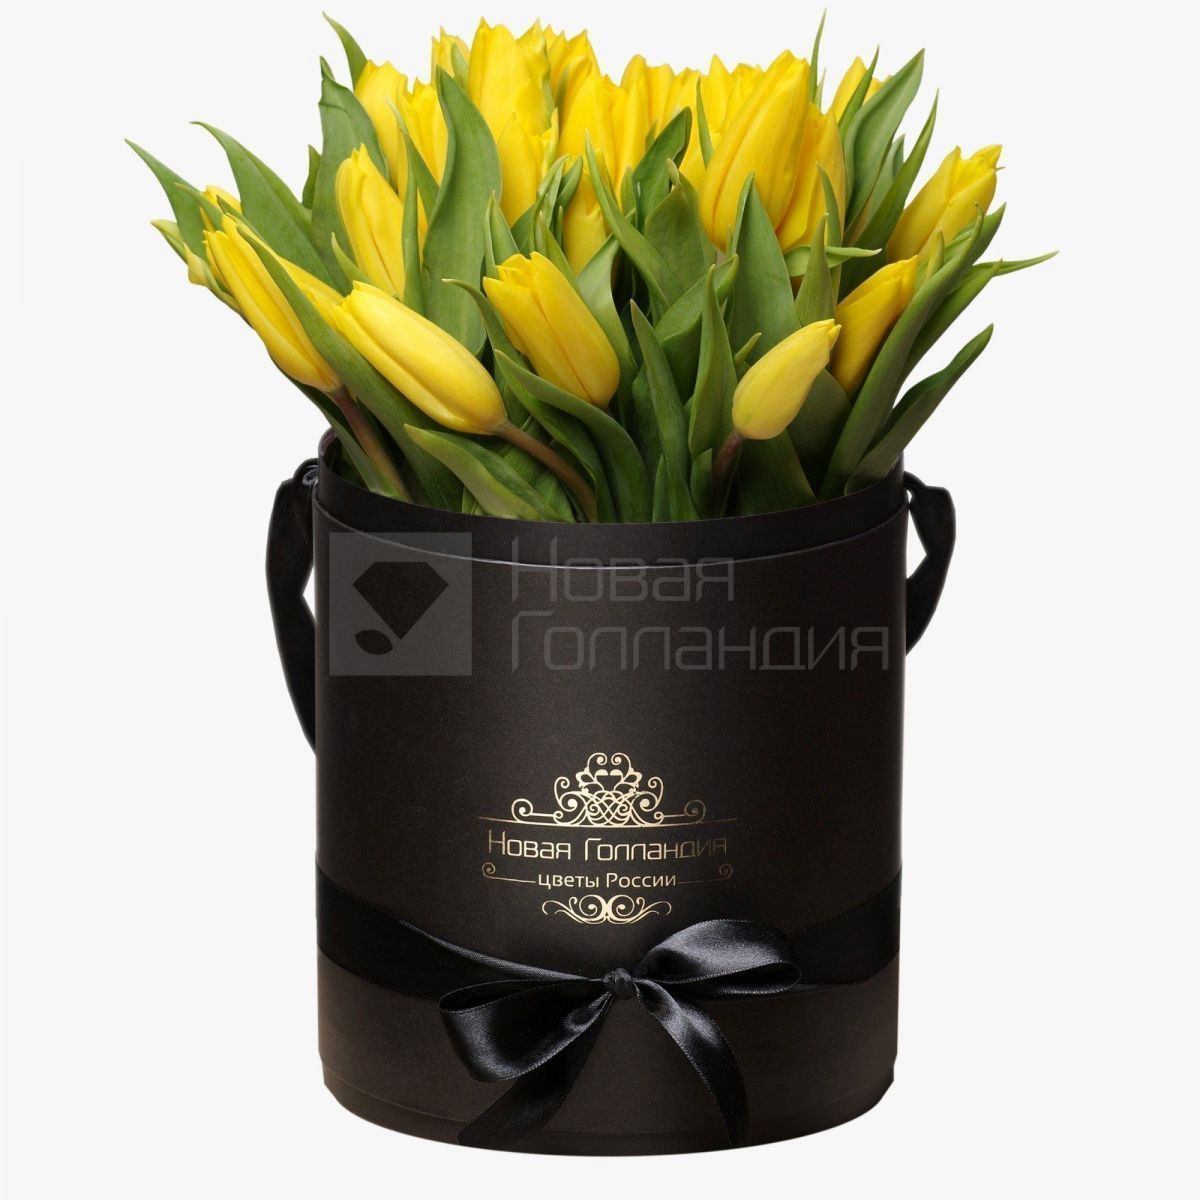 35 желтых тюльпанов в черной шляпной коробке №225